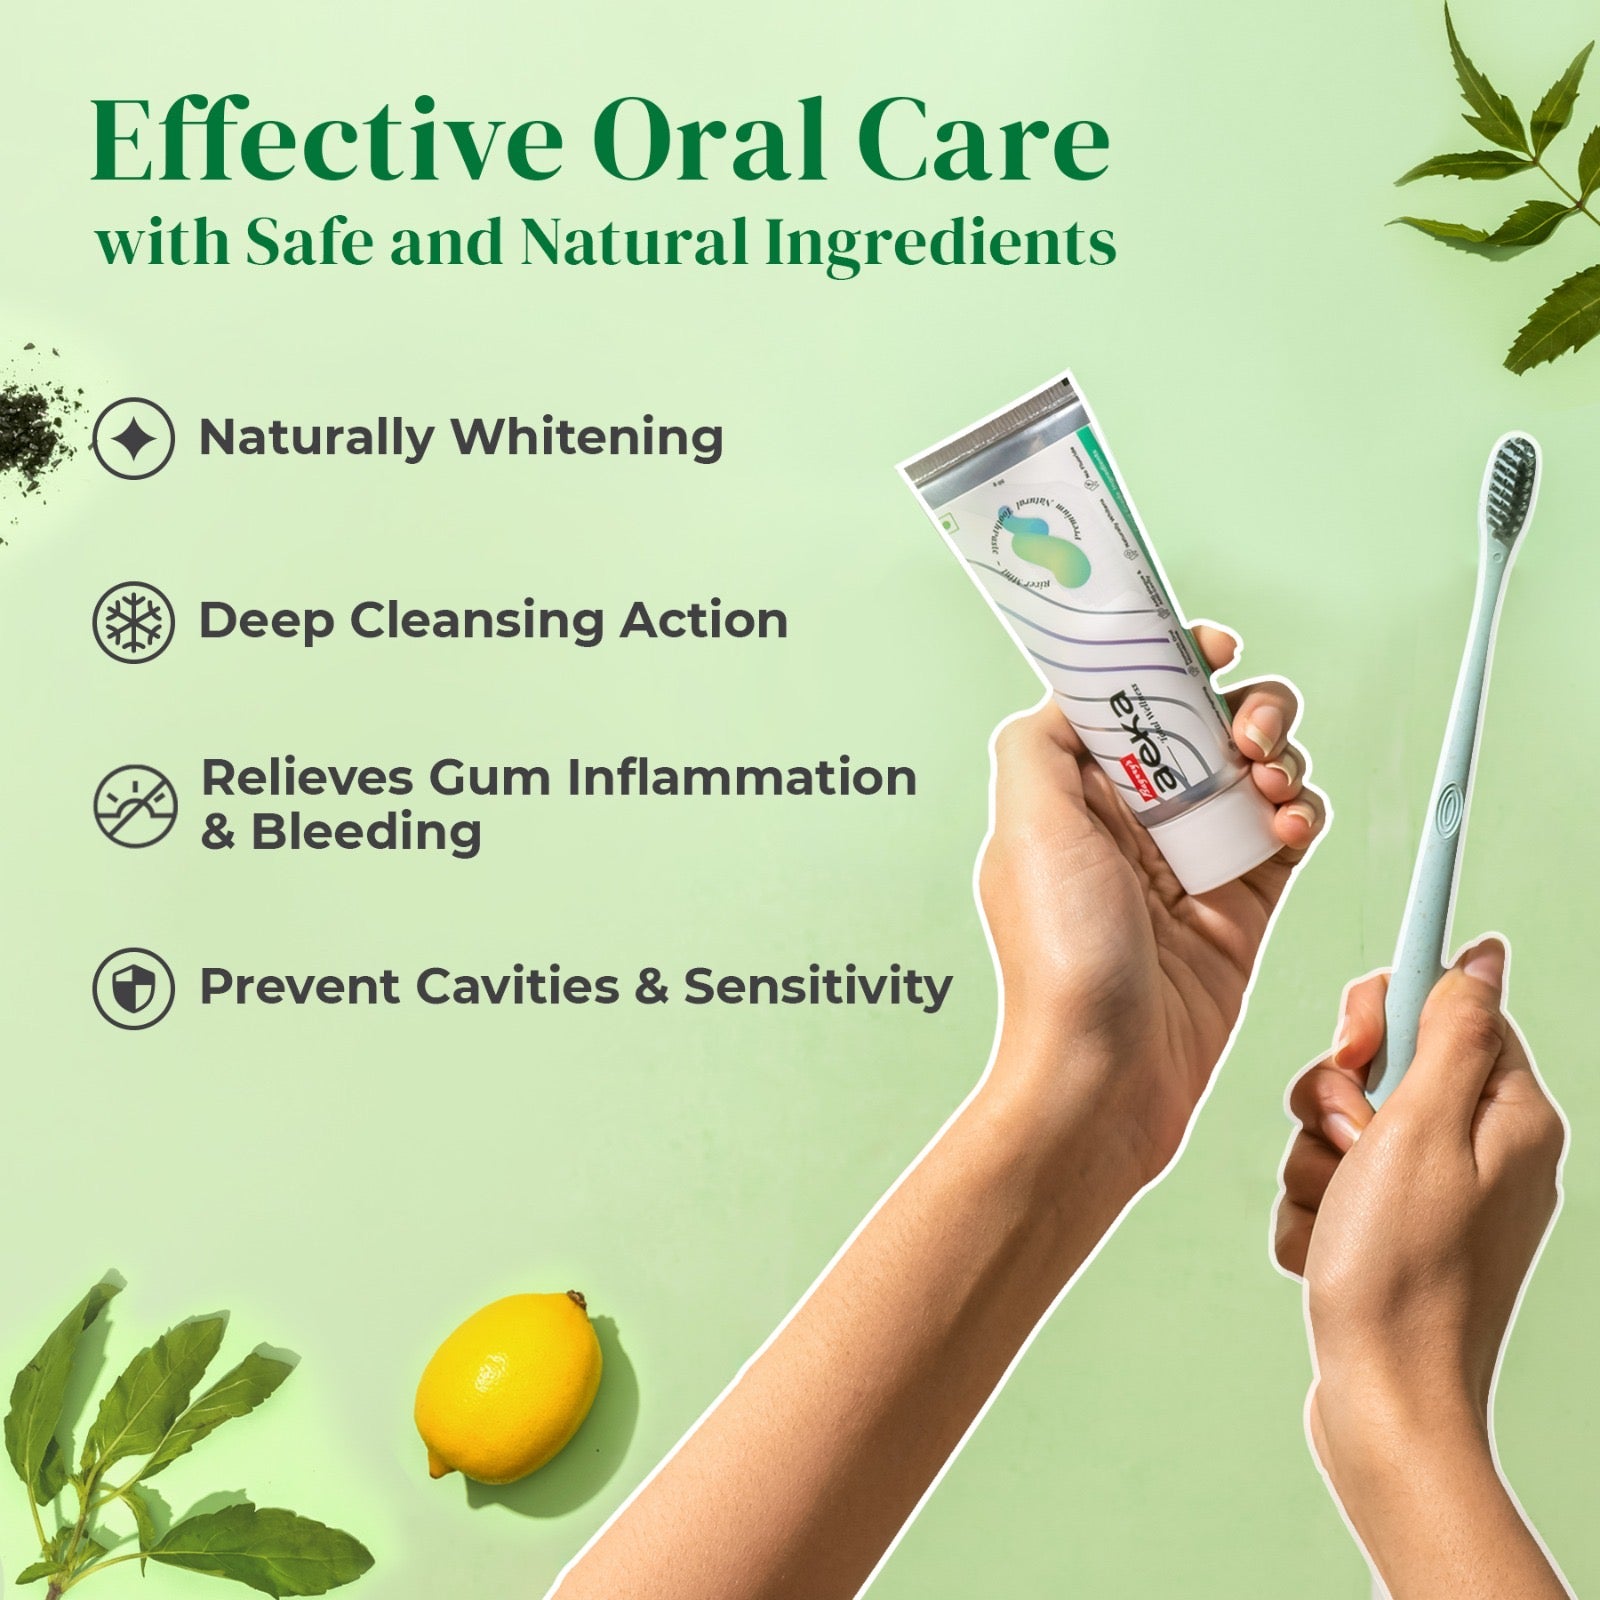 Aeka Premium Natural Toothpaste